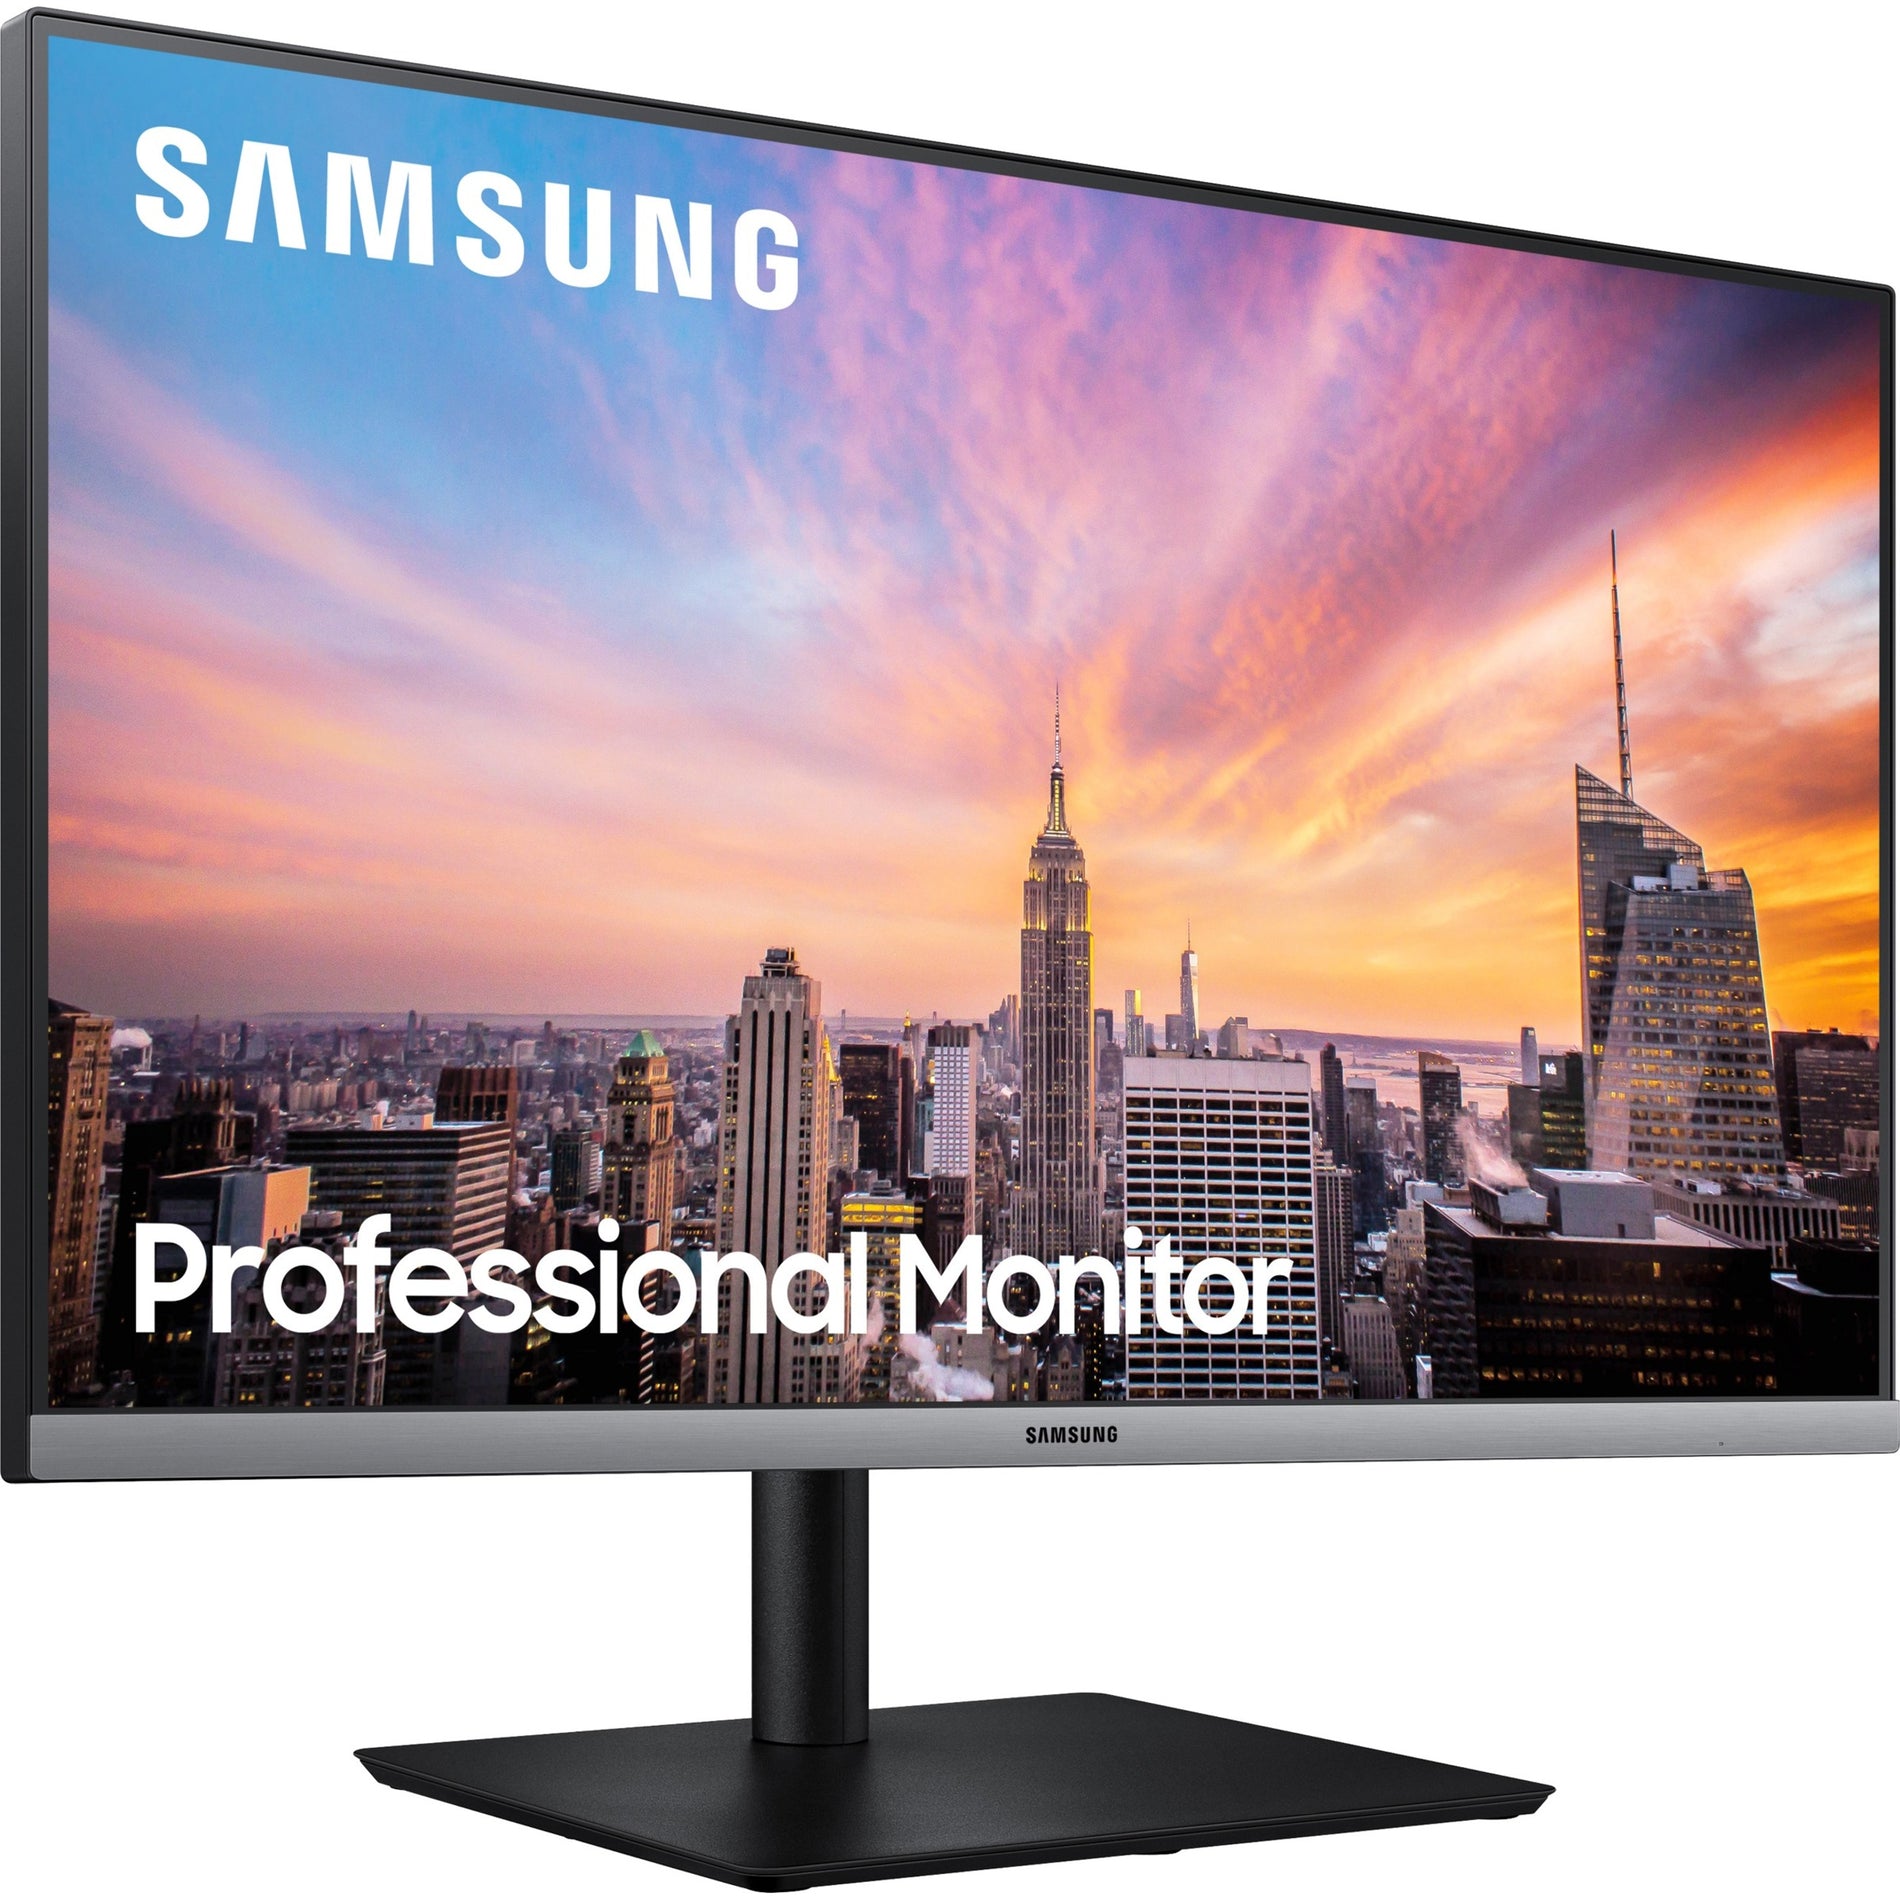 Samsung S27R650FDN 27" Full HD LCD Monitor - 16:9 - Dark Blue Gray (S27R650FDN) Right image